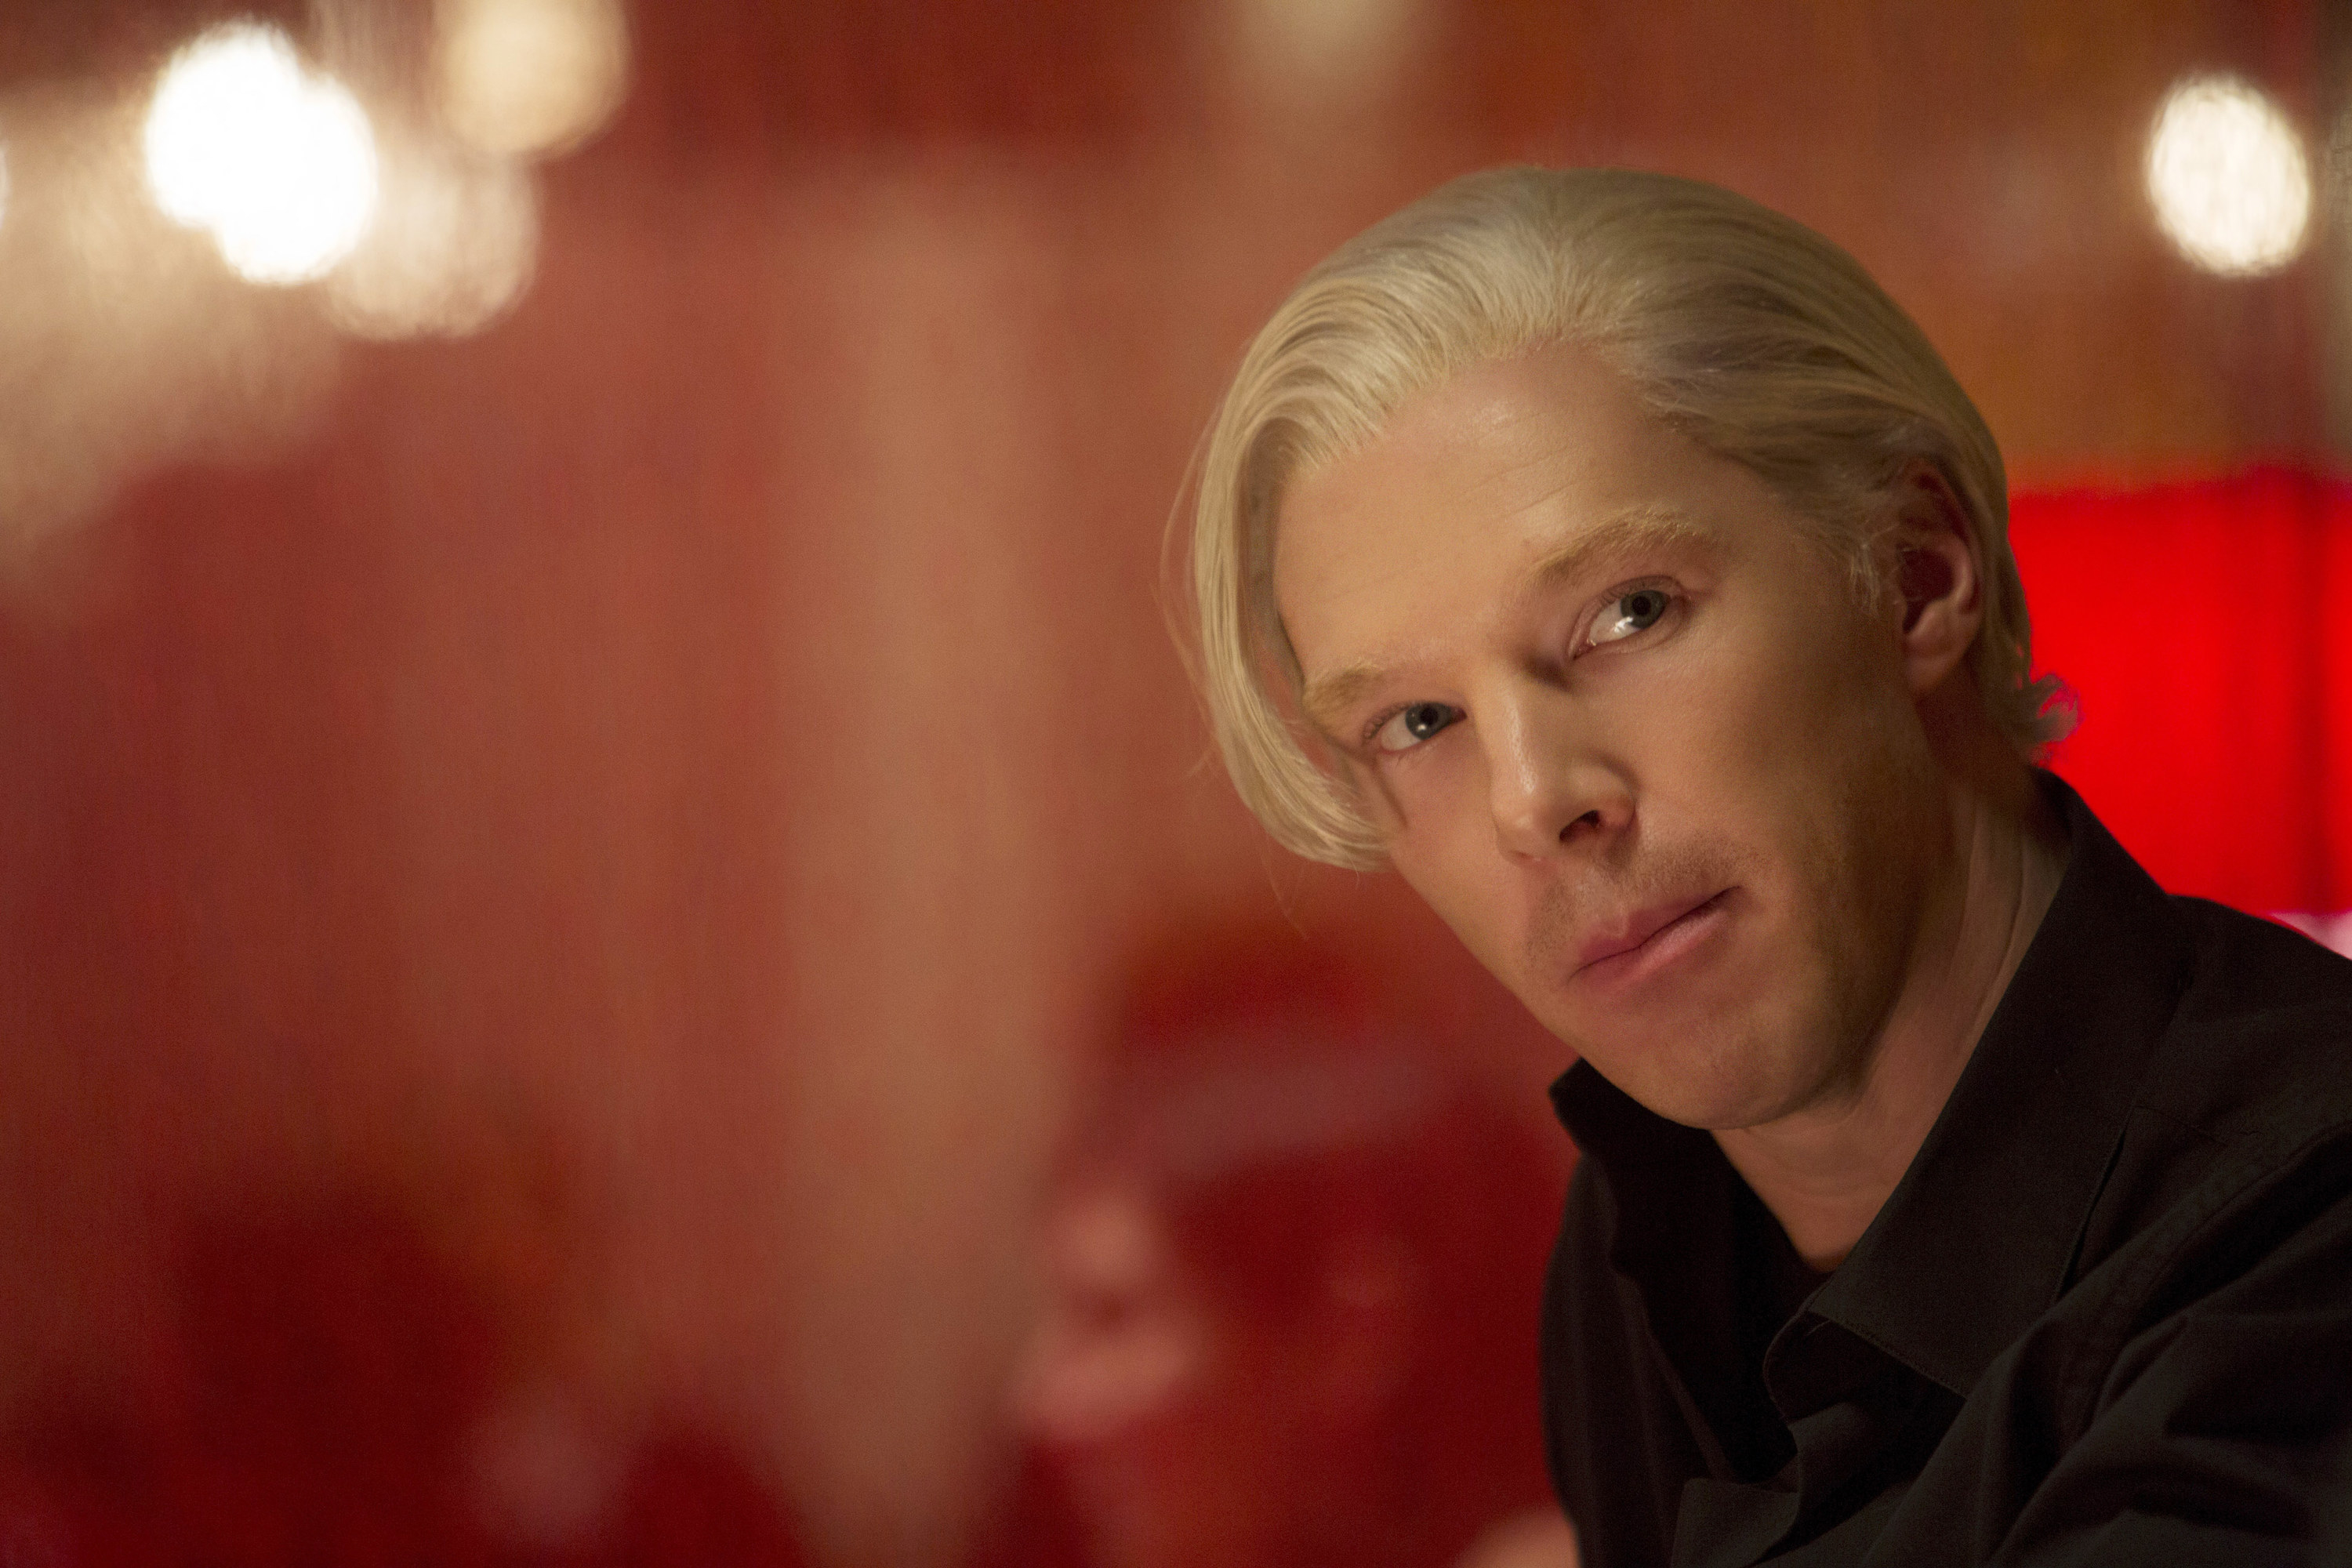 A close up of Benedict Cumberbatch in a short blonde wig